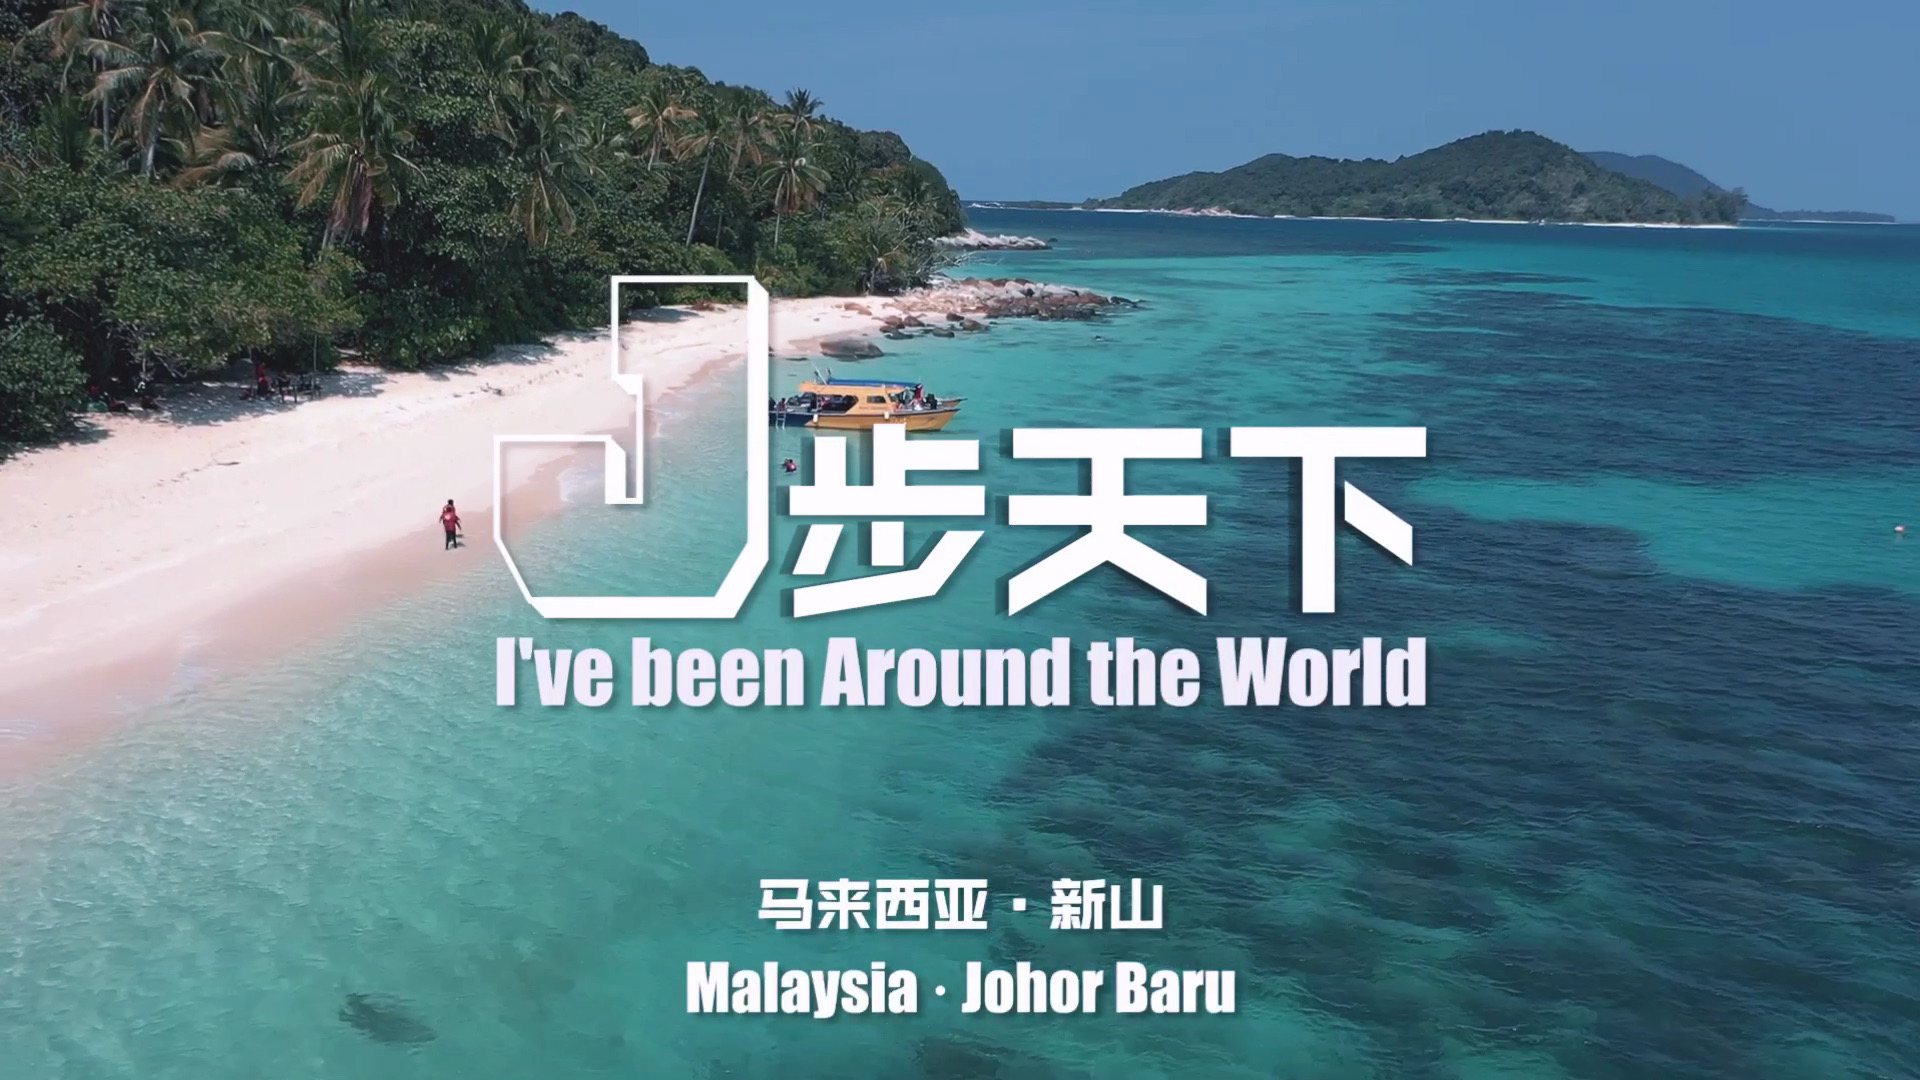 马来半岛东海岸新玩法： 迪沙鲁—丰盛港 2小时车程 丰盛港—伯沙岛 30分钟快船 伯沙岛周边跳岛（2